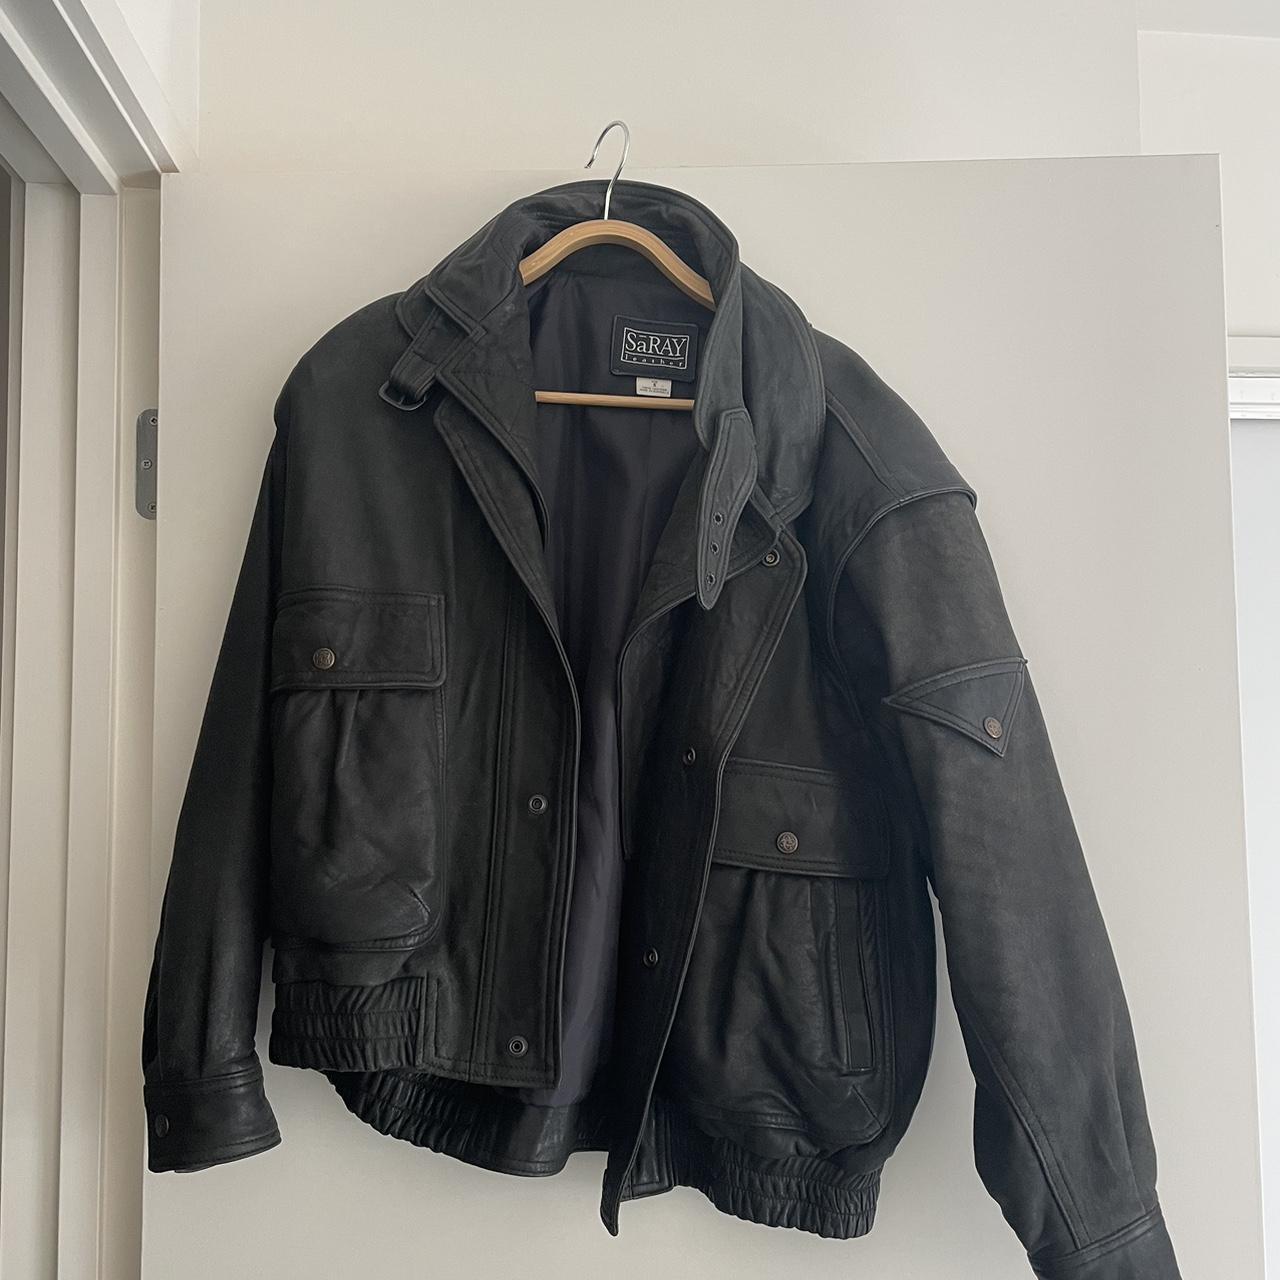 Vintage oversized leather jacket - Depop